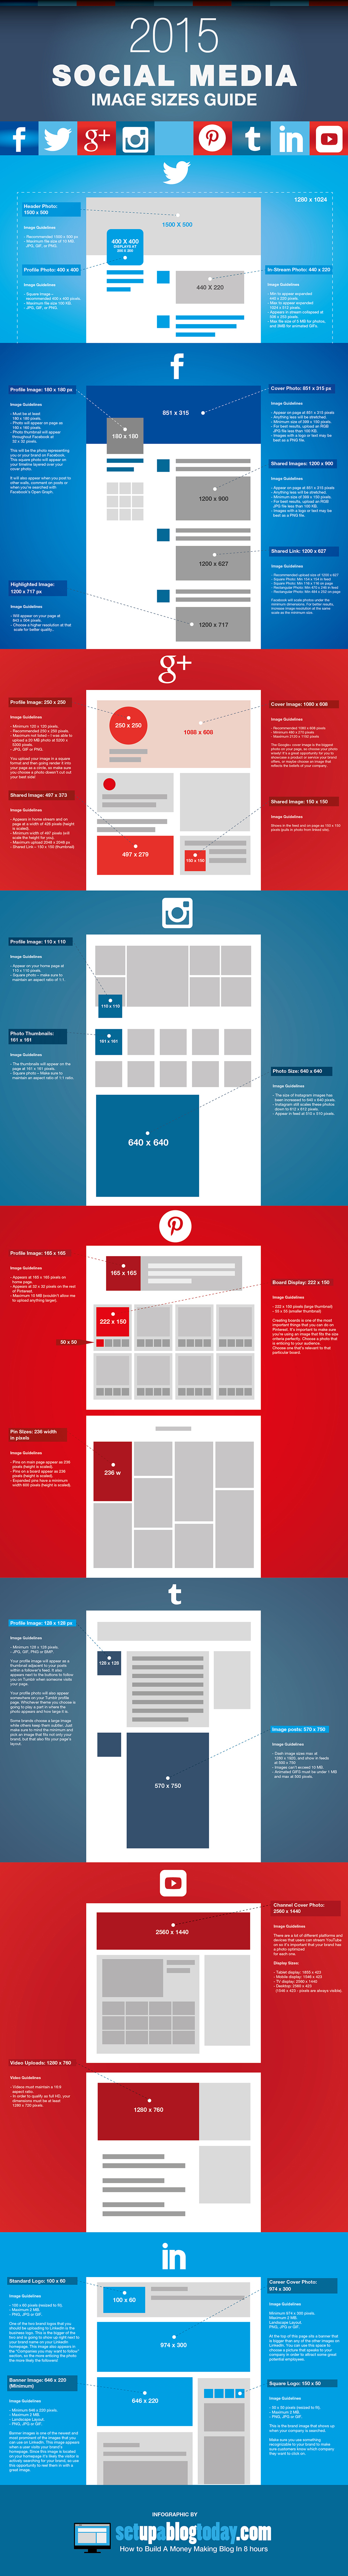 Guía de tamaño de imágenes para redes sociales 2015